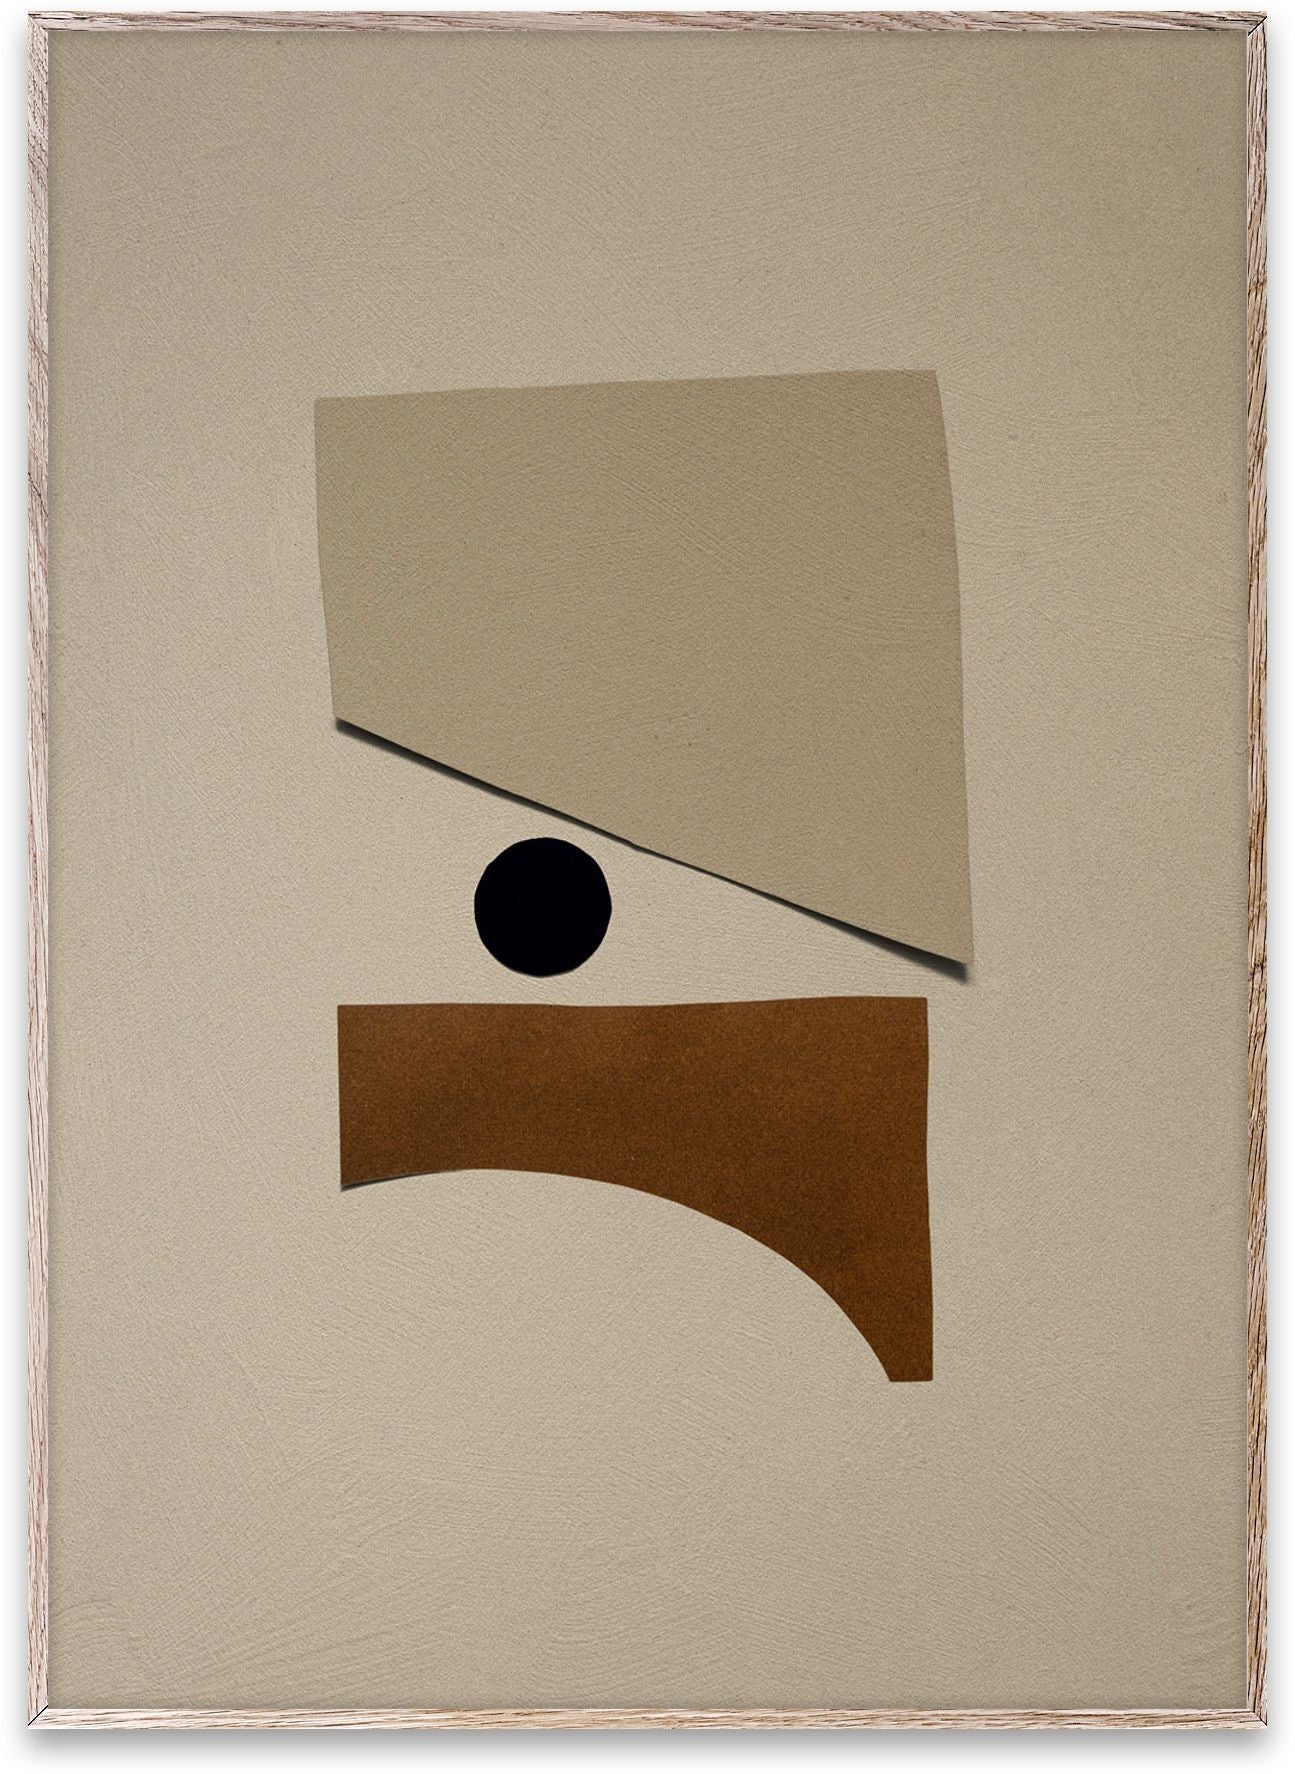 Paper Collective Kooppunt 01 -poster, 70x100 cm